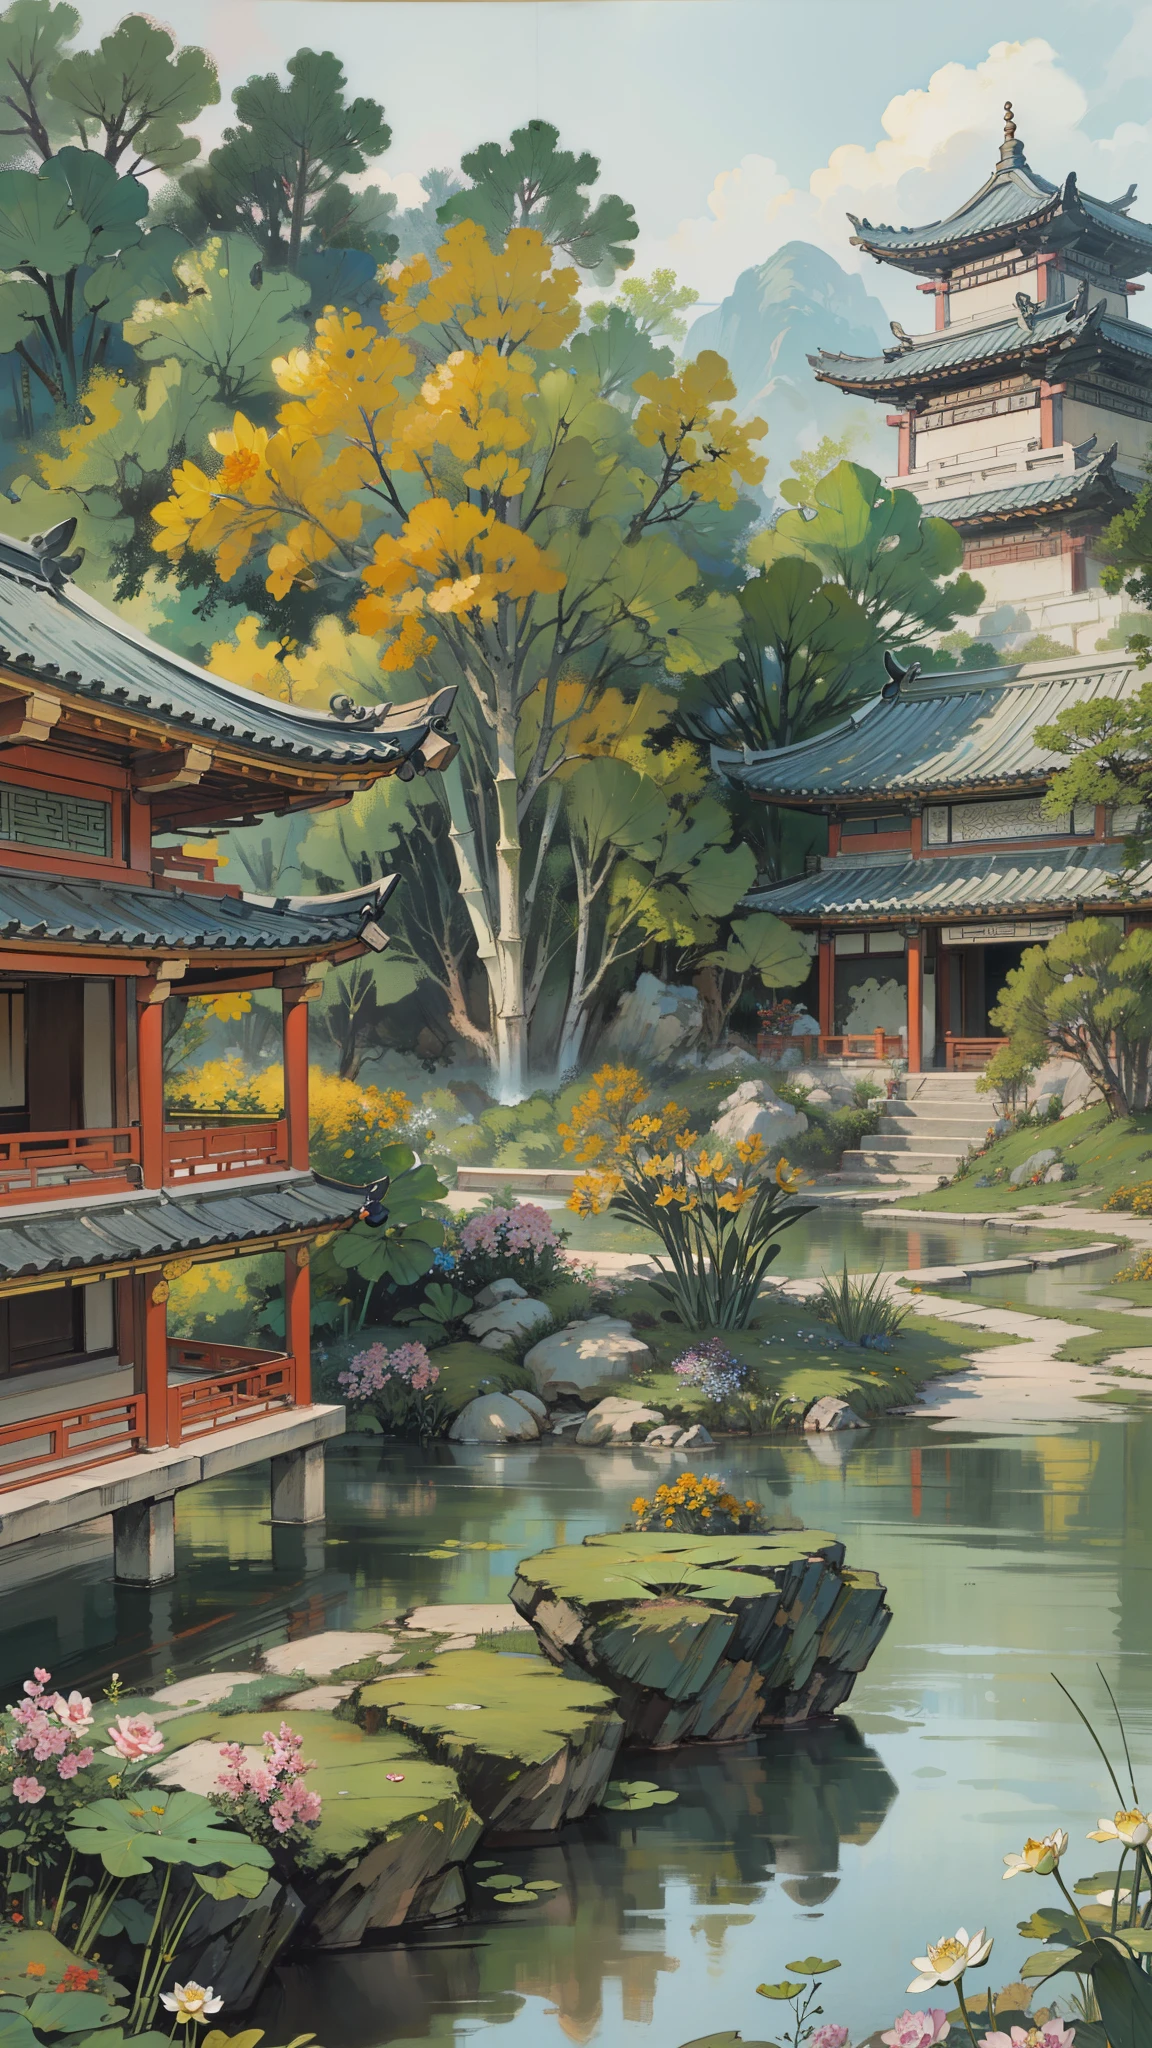 ((最好的品質, 傑作: 1.2)), CG, 8K, 錯綜複雜的細節, 看法, (周圍沒有人), (中国古代园林), pond filled with lotus 花朵, 岩石, 花朵, 竹林, 落下, 樹木繁茂的地區, 横跨潺潺溪流的小桥, detailed foliage and 花朵, (陽光普照, 波光粼粼的波浪), 和平与安宁的氛围, ((色彩柔和優雅)), ((精心制作的作品))